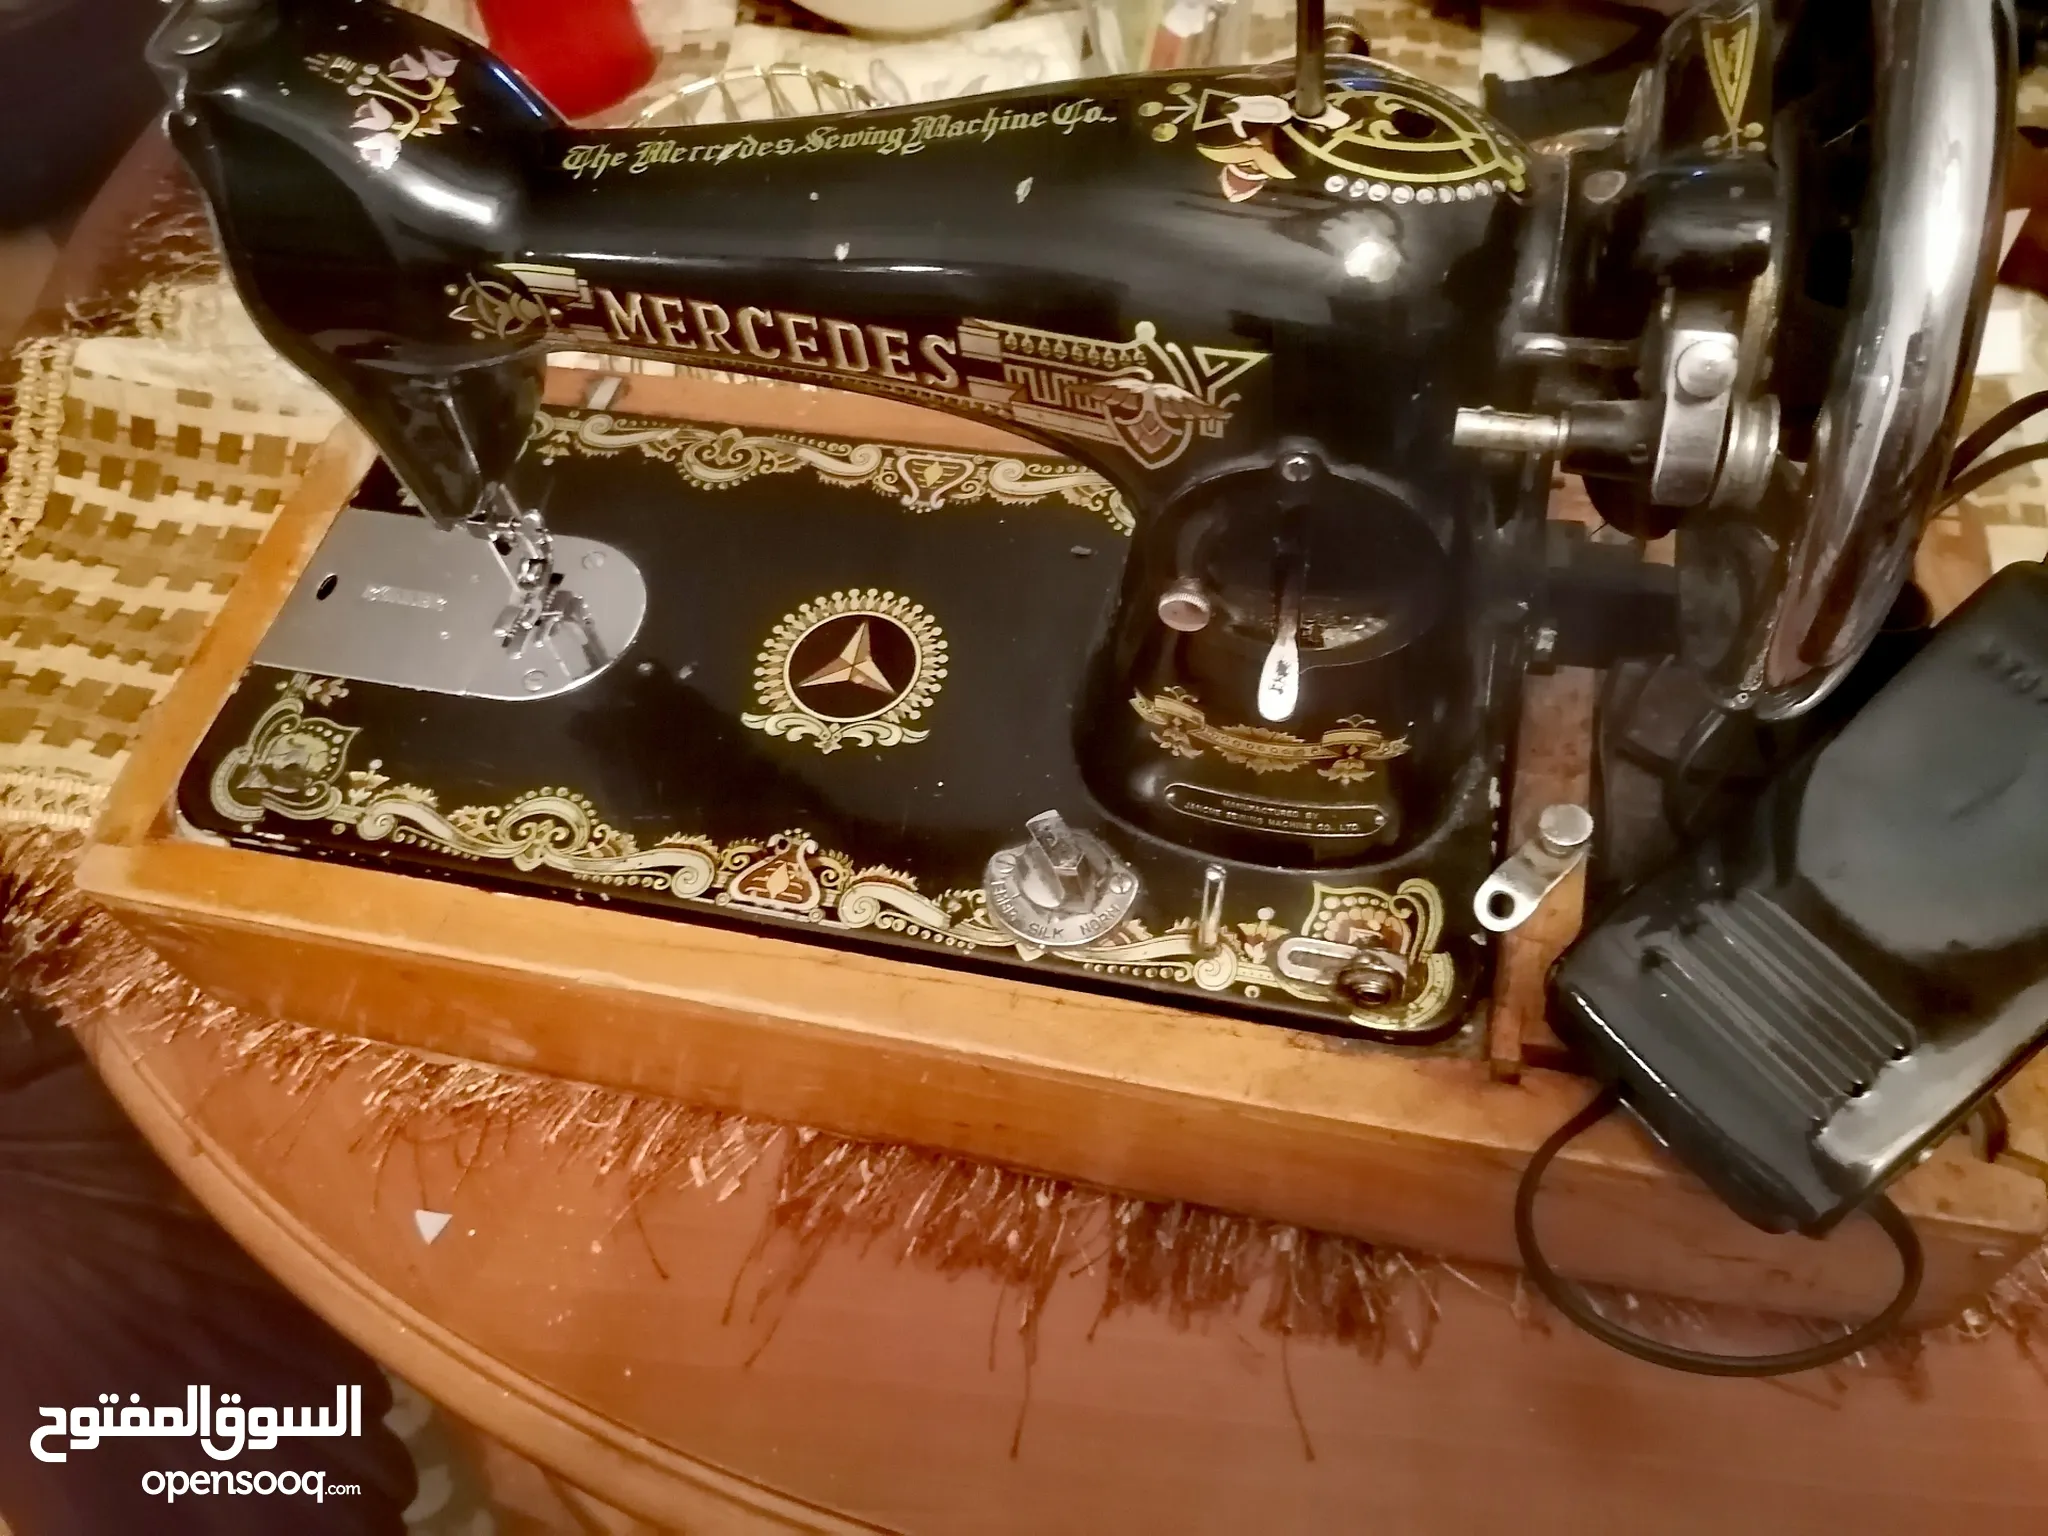 معدات ومستلزمات خياطة للبيع في ليبيا : ماكينات خياطة : افضل سعر